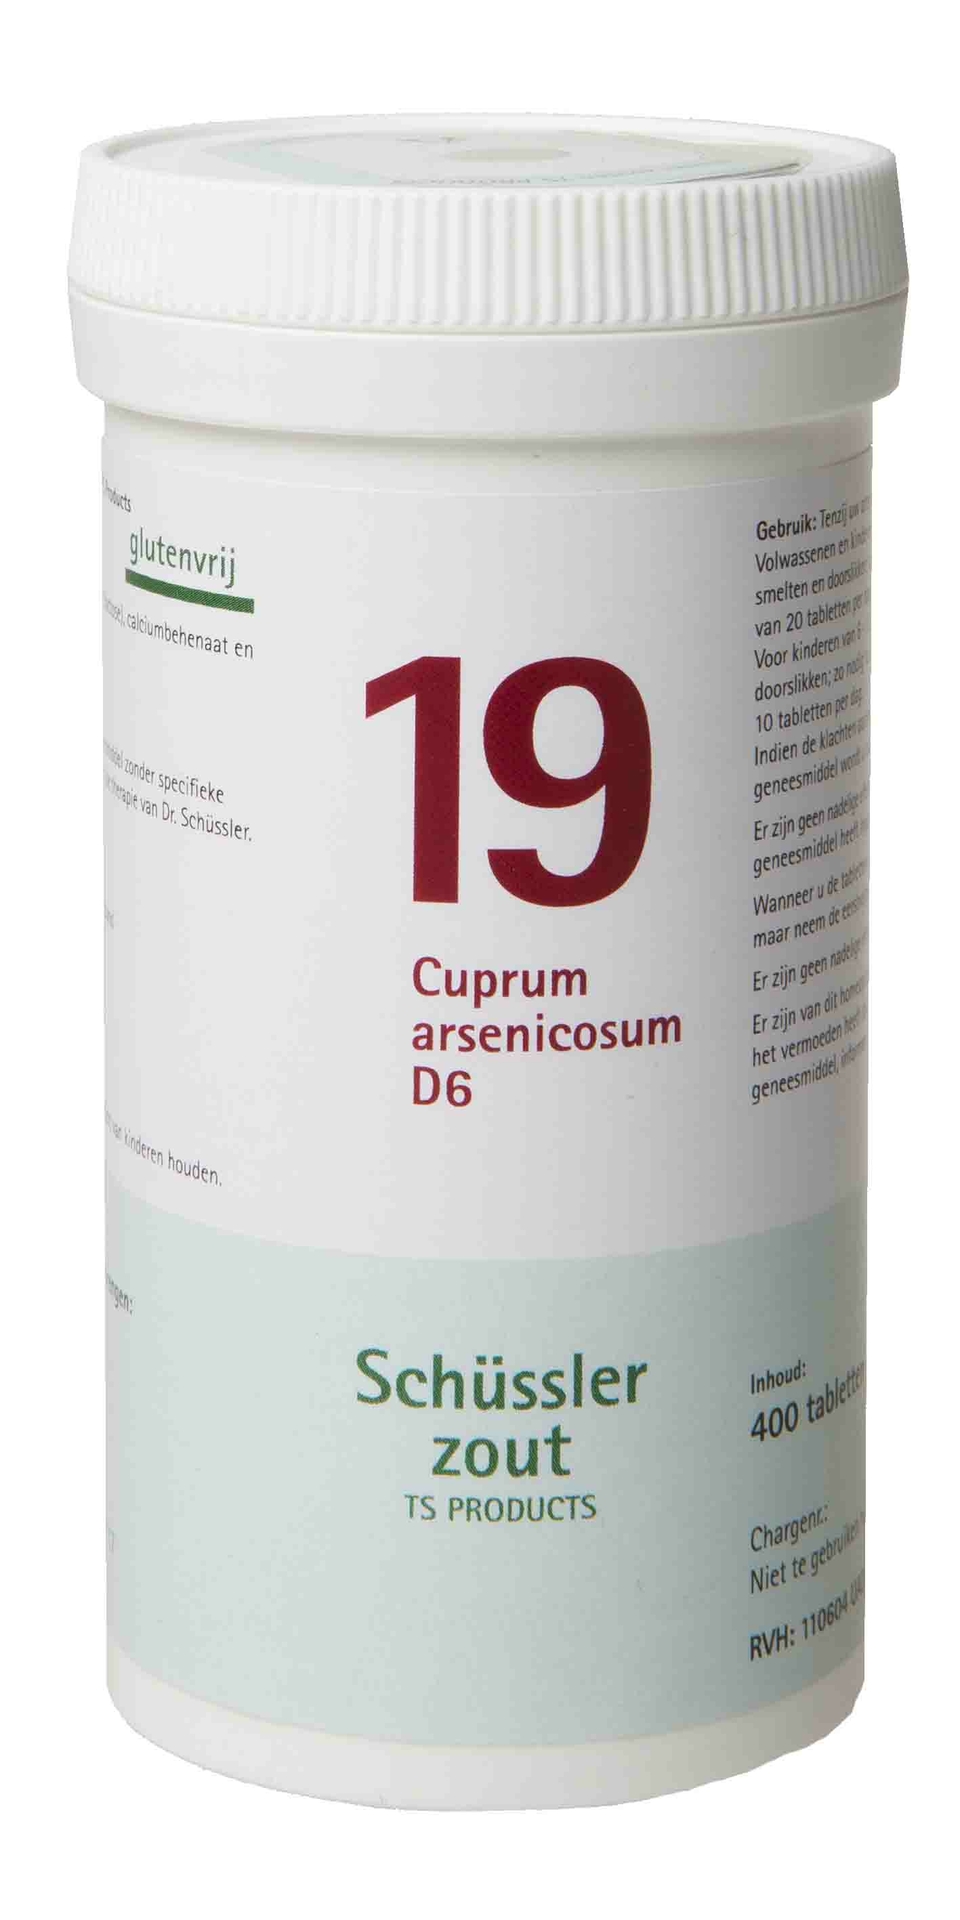 Cuprum arsenicosum